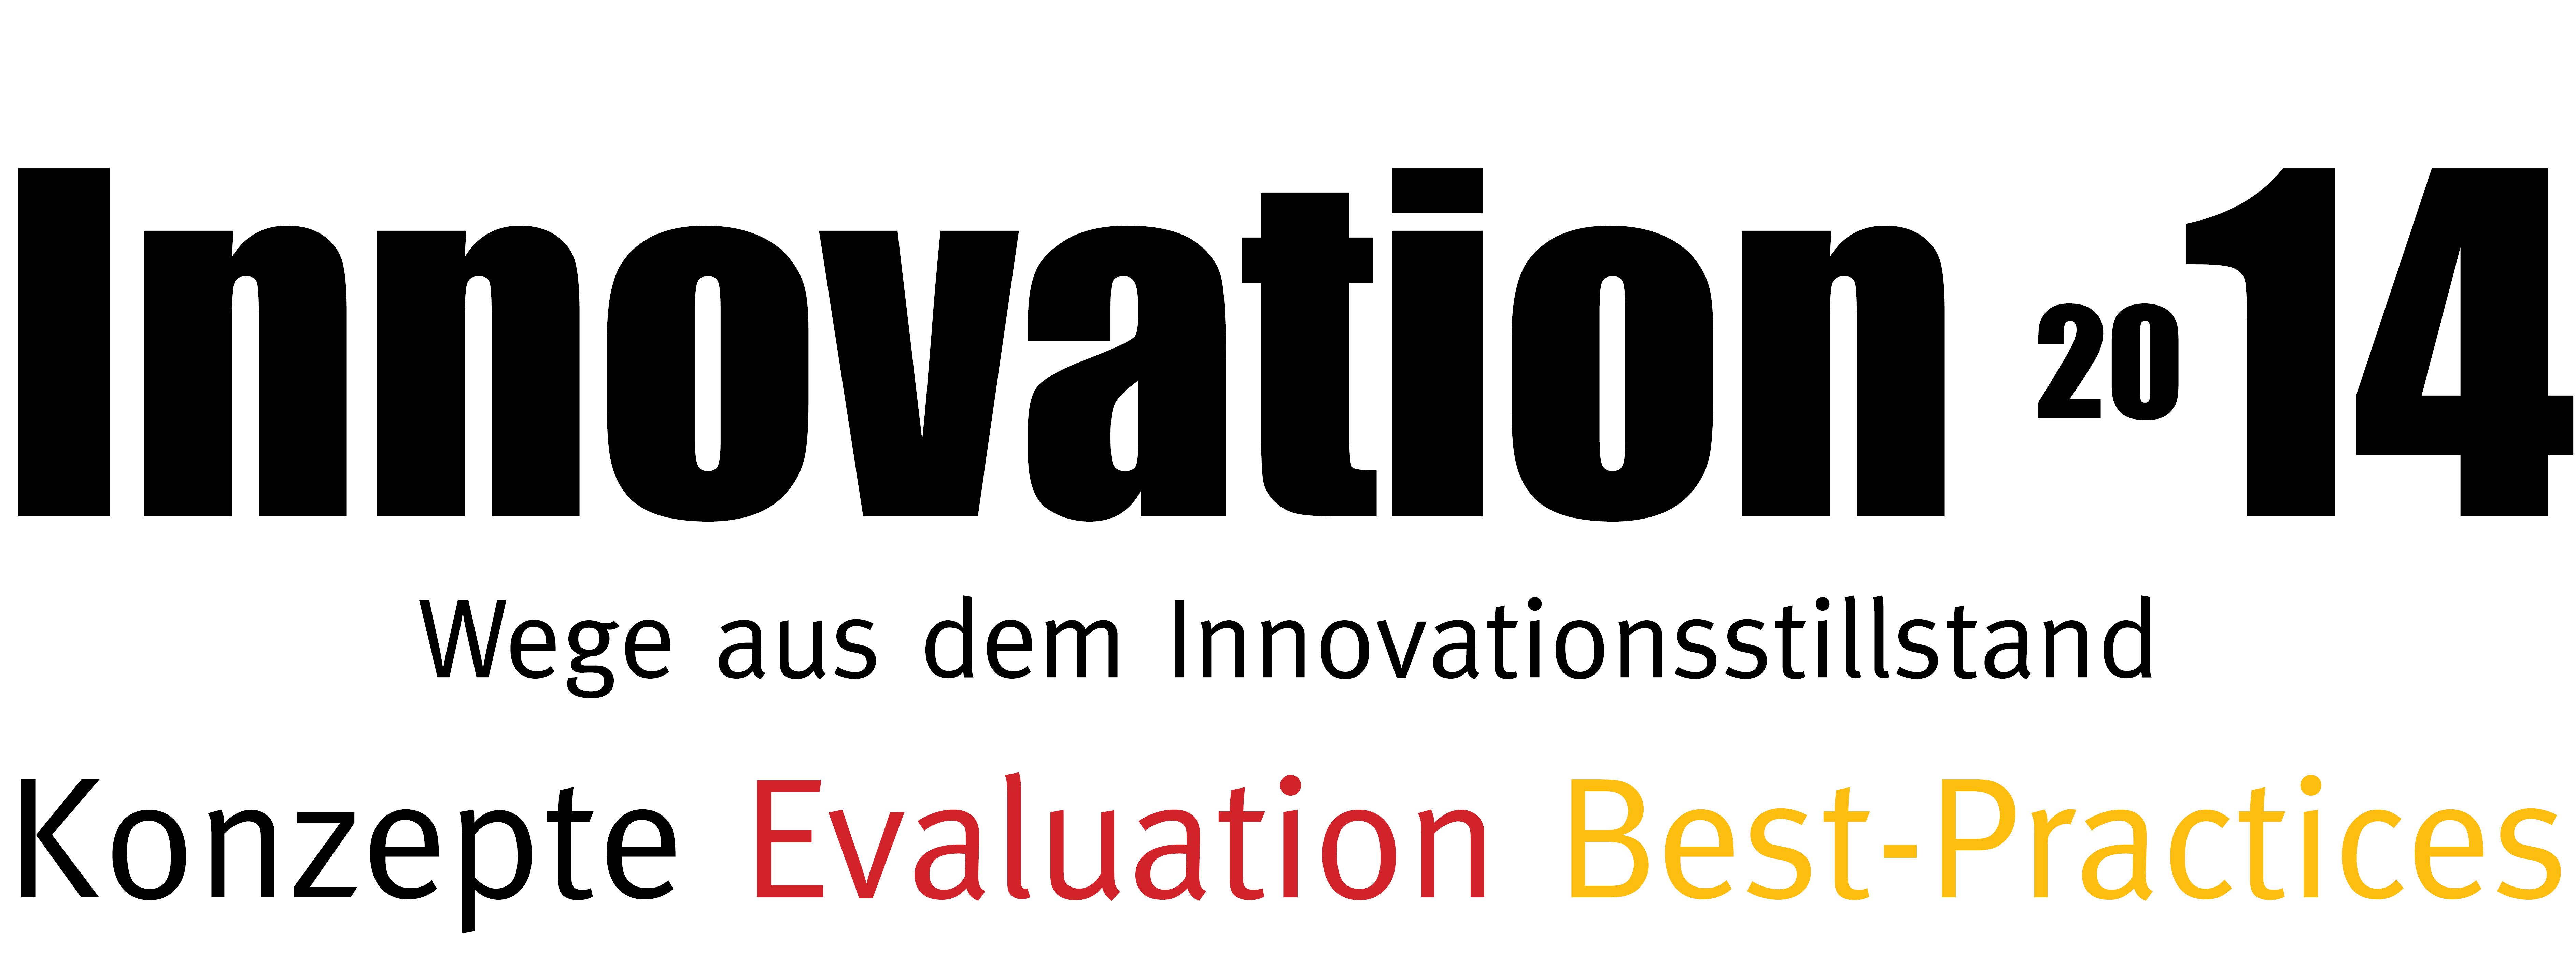 Innovation 2014 - Wege aus dem Innovationsstillstand Konzepte - Evaluation - Best-Practices 